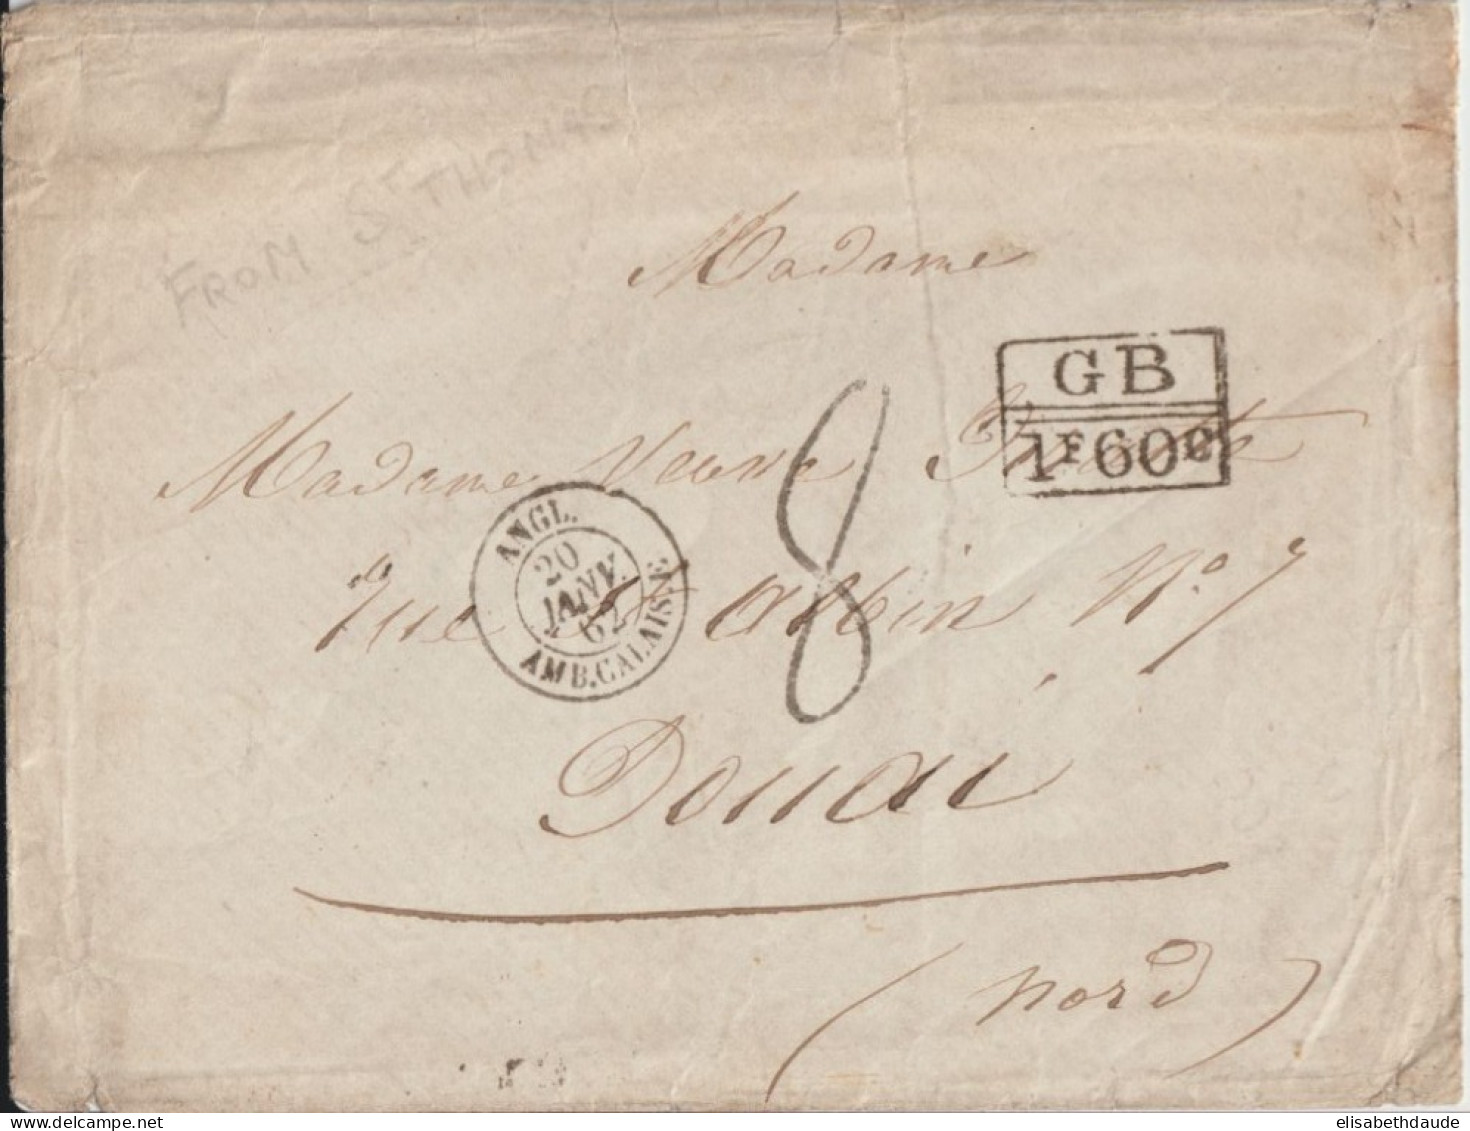 1862 - LETTRE De ST THOMAS (DOS) !! ENTREE AMBULANT MARITIME ANGL. AMB.CALAIS.E !  => DOUAI - MARQUE D'ECHANGE GB 1F60c - Postmark Collection